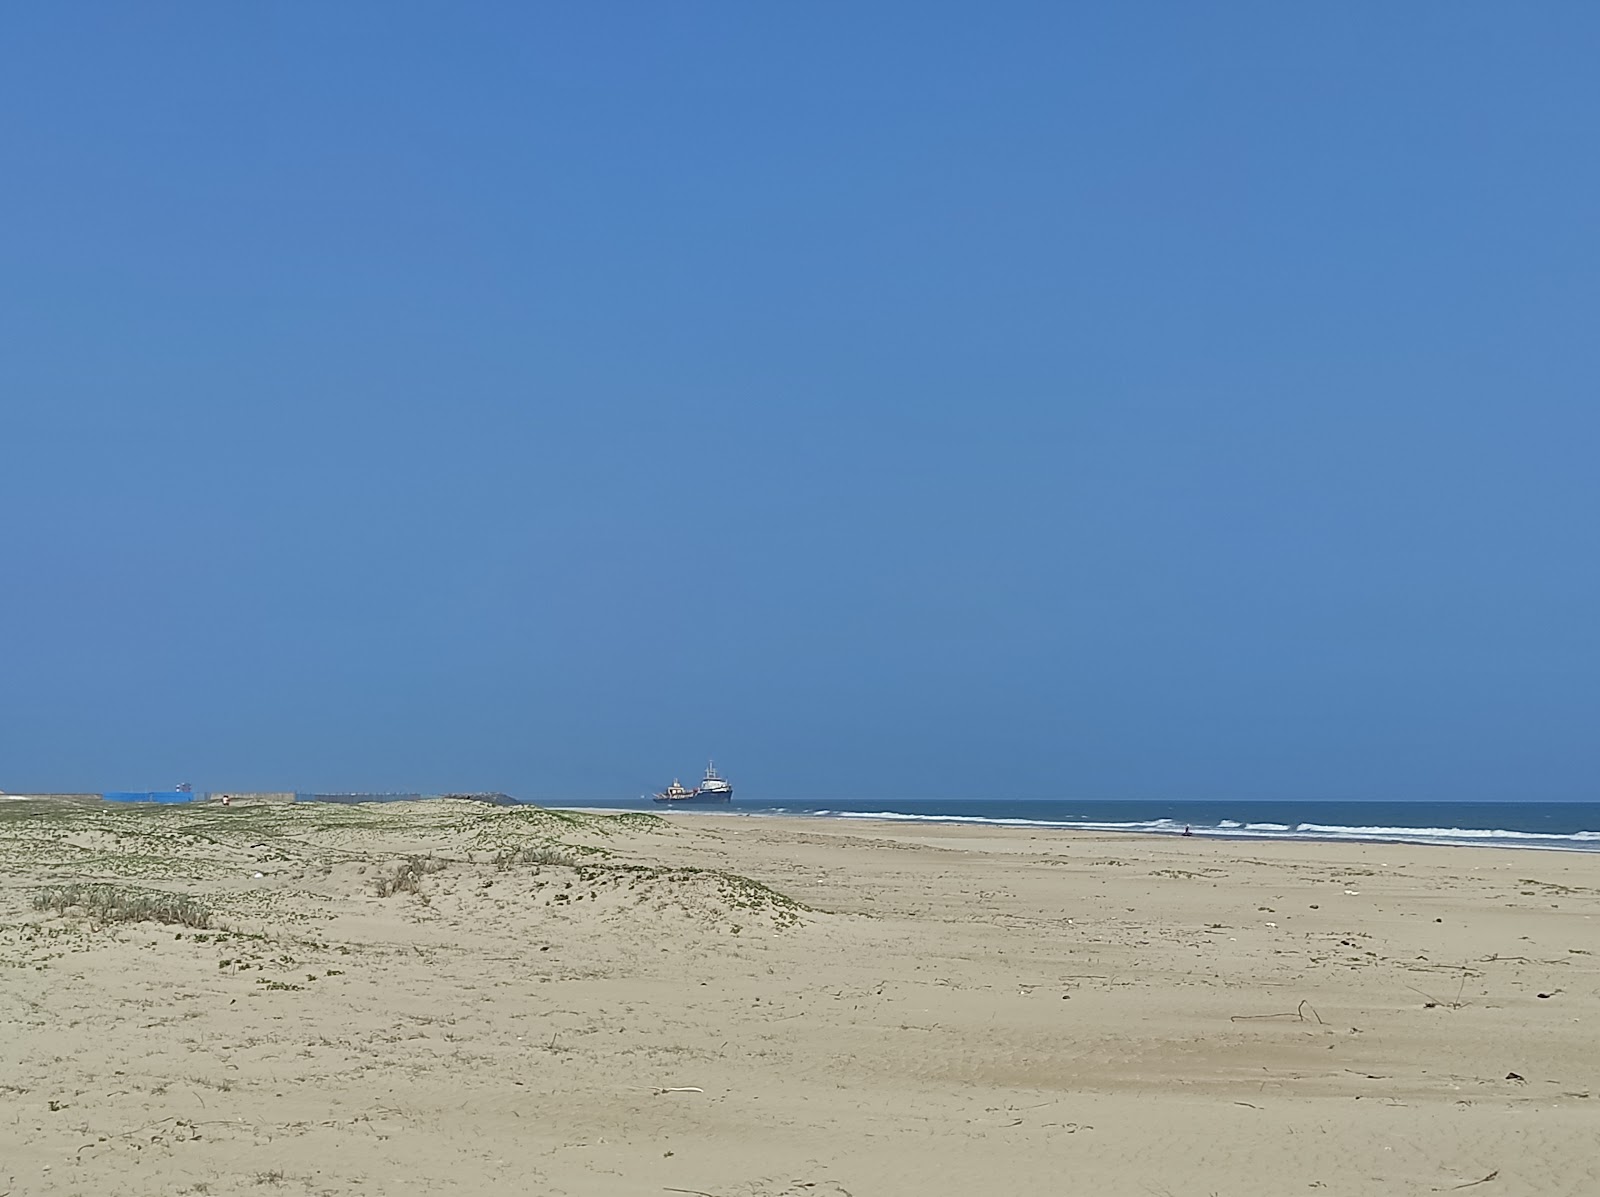 Fotografie cu Paradeep Sea Beach - locul popular printre cunoscătorii de relaxare